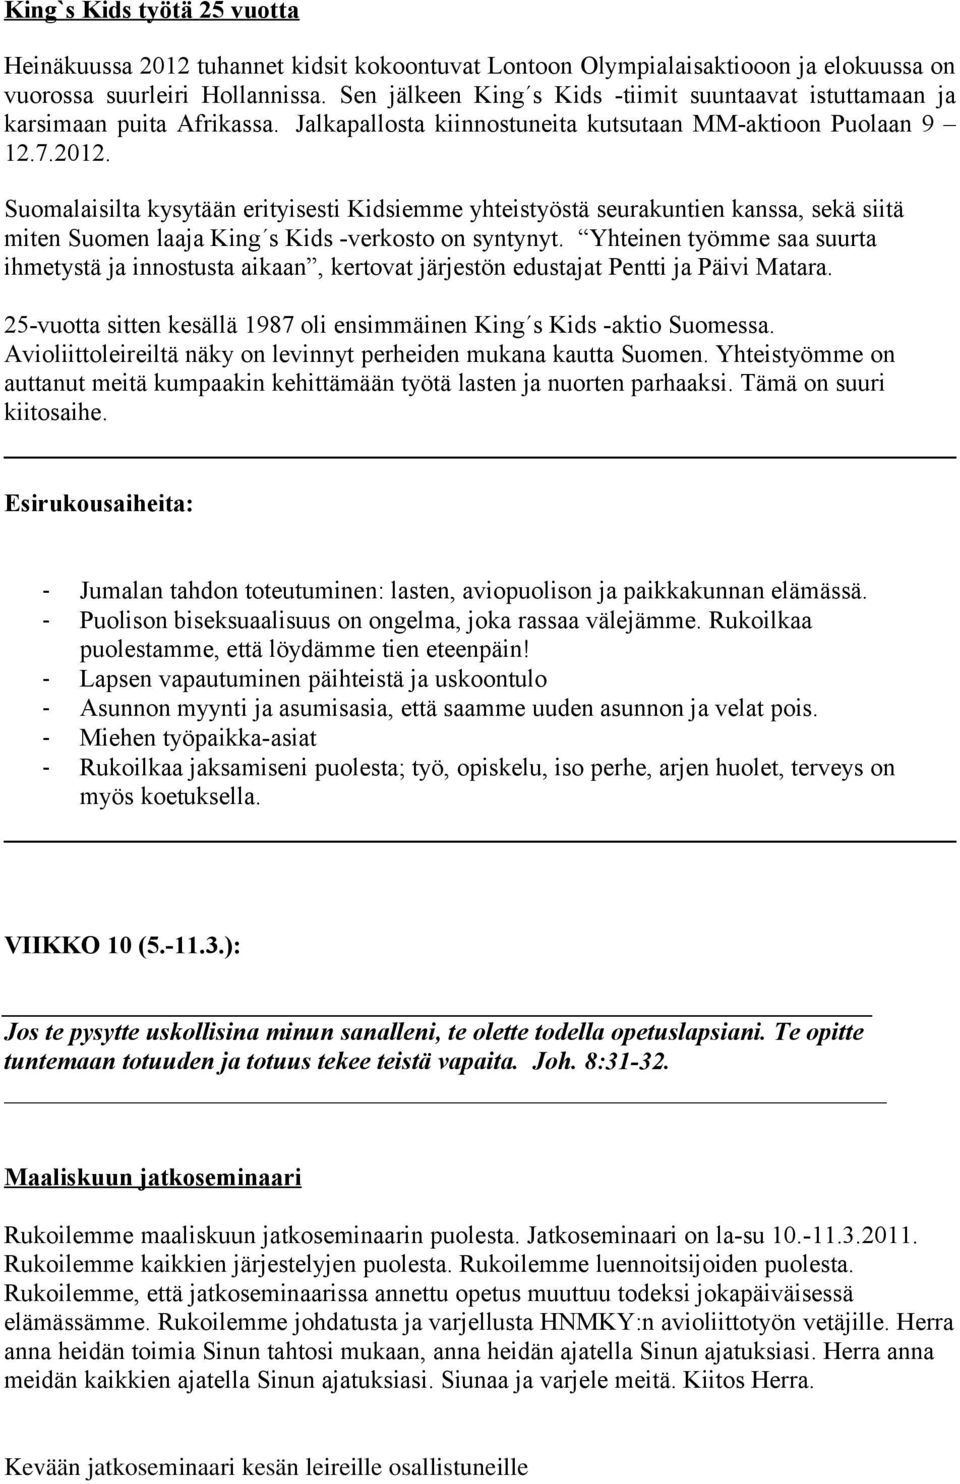 Suomalaisilta kysytään erityisesti Kidsiemme yhteistyöstä seurakuntien kanssa, sekä siitä miten Suomen laaja King s Kids -verkosto on syntynyt.